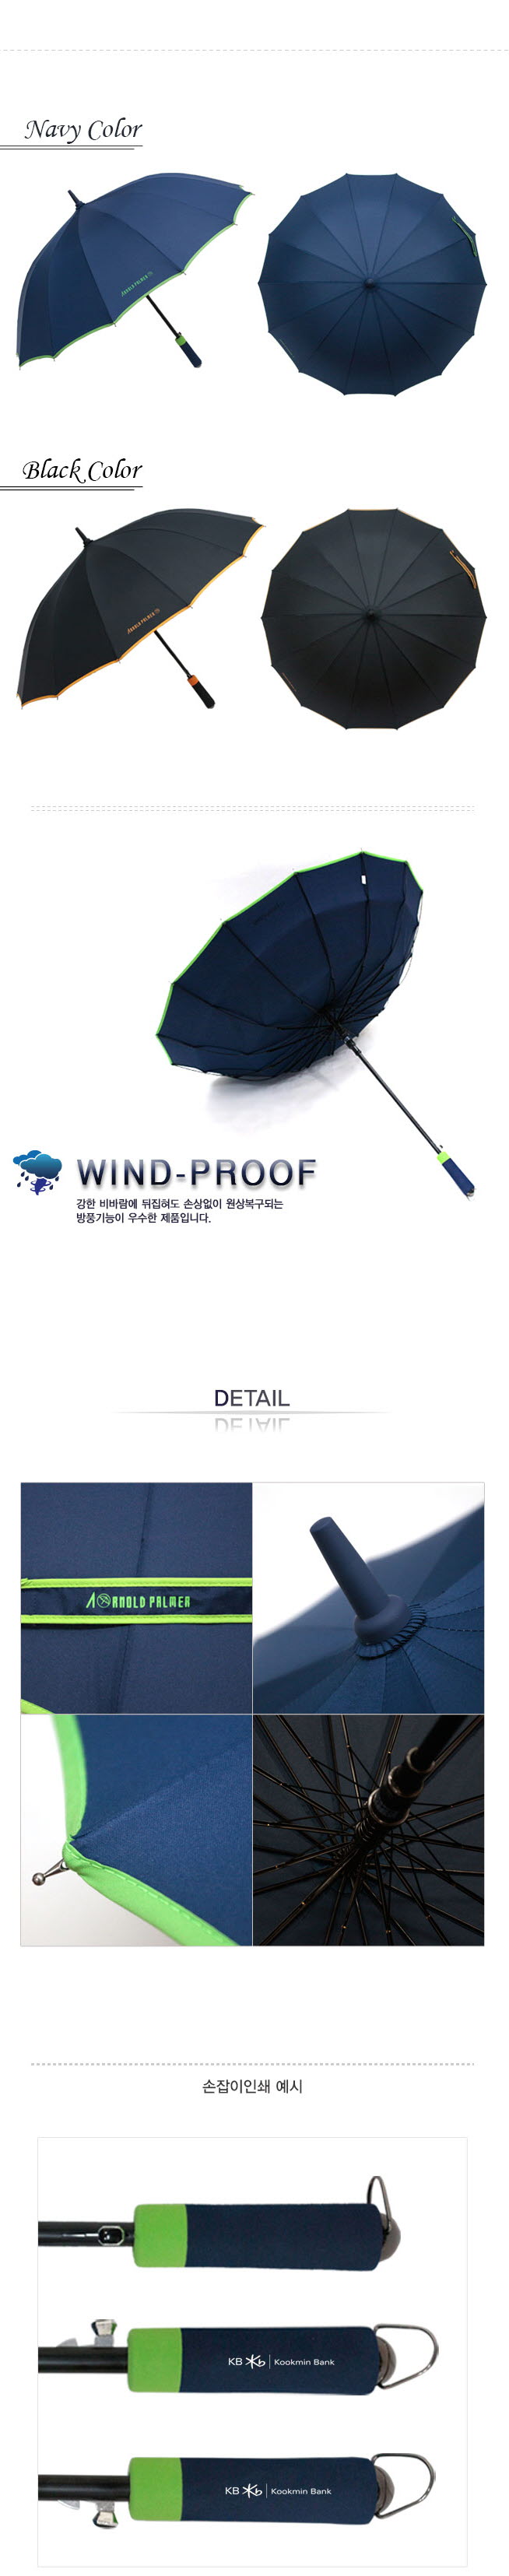 방풍기능(wind proof) 강한 비바람에 뒤집혀도 손상없이 원상복구되는 방풍기능이 우수합니다.